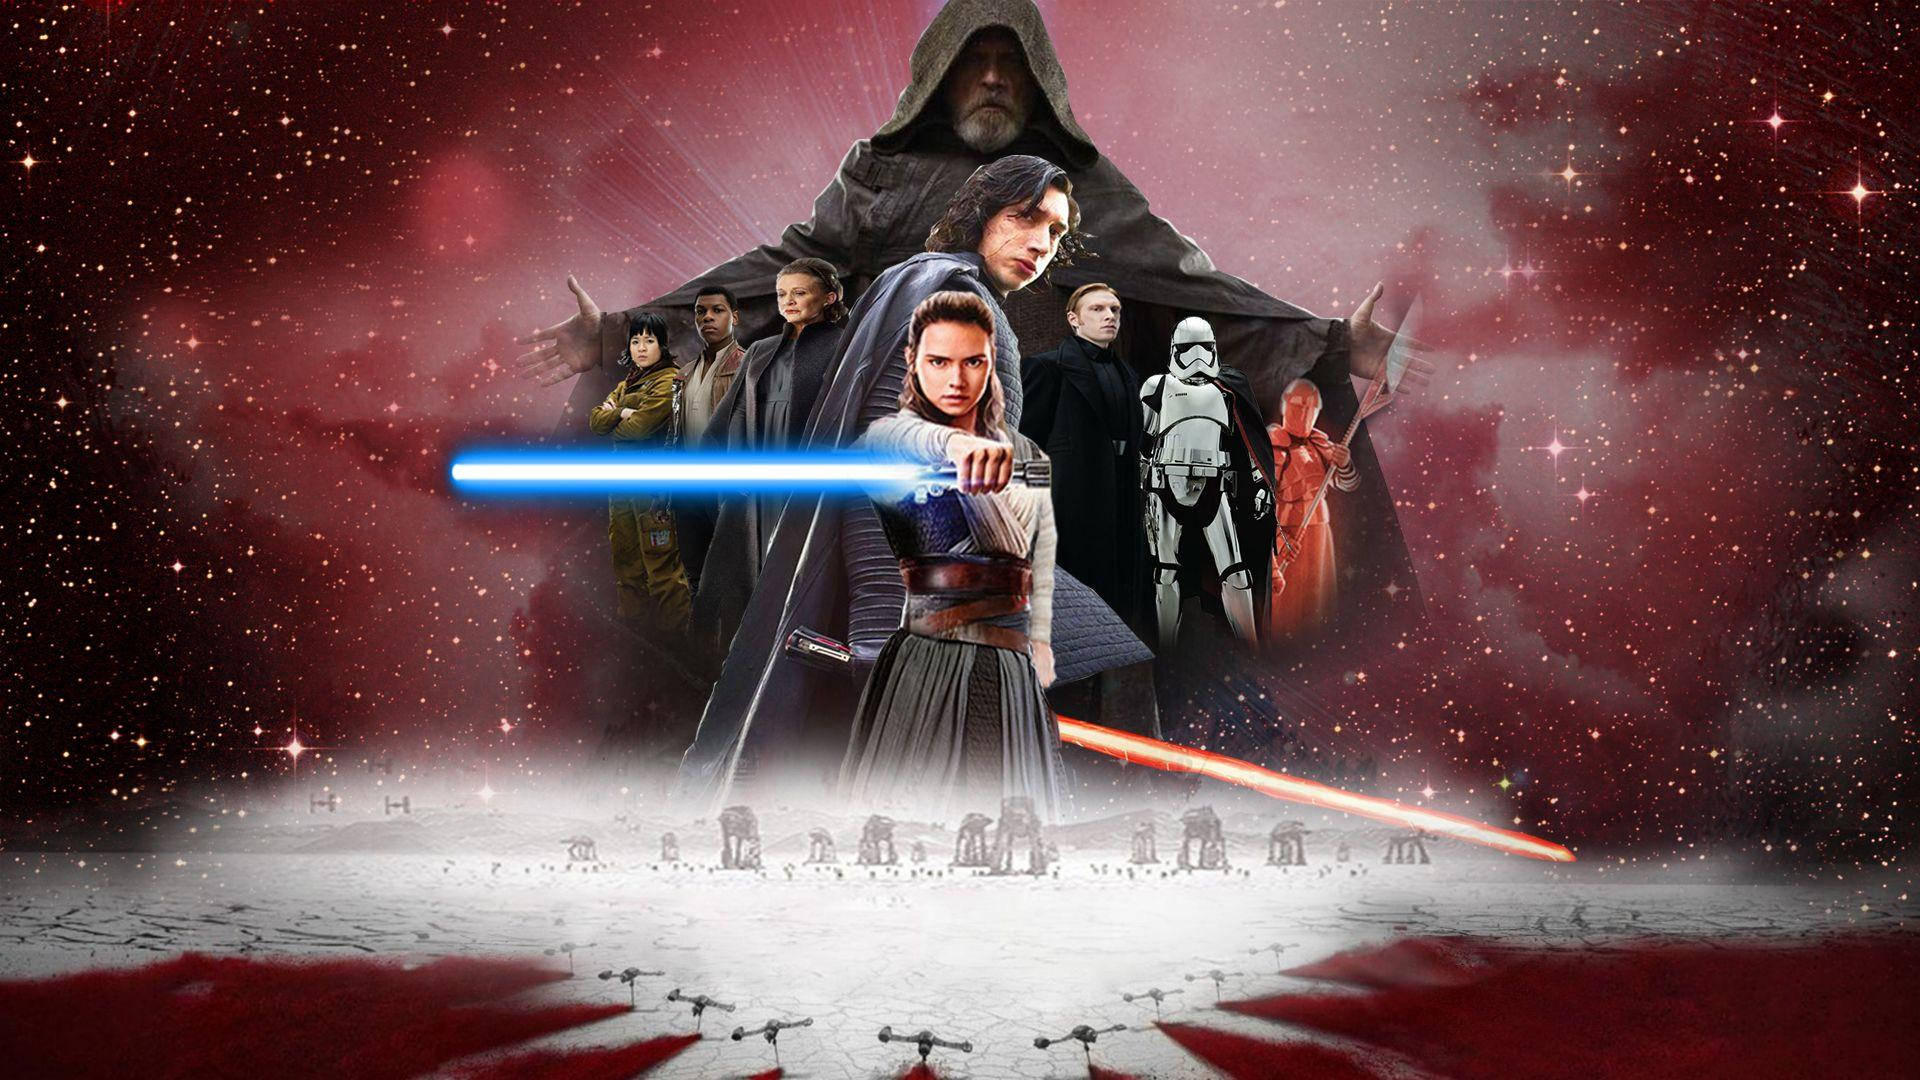 Postersorprendente The Last Jedi Star Wars Sfondo